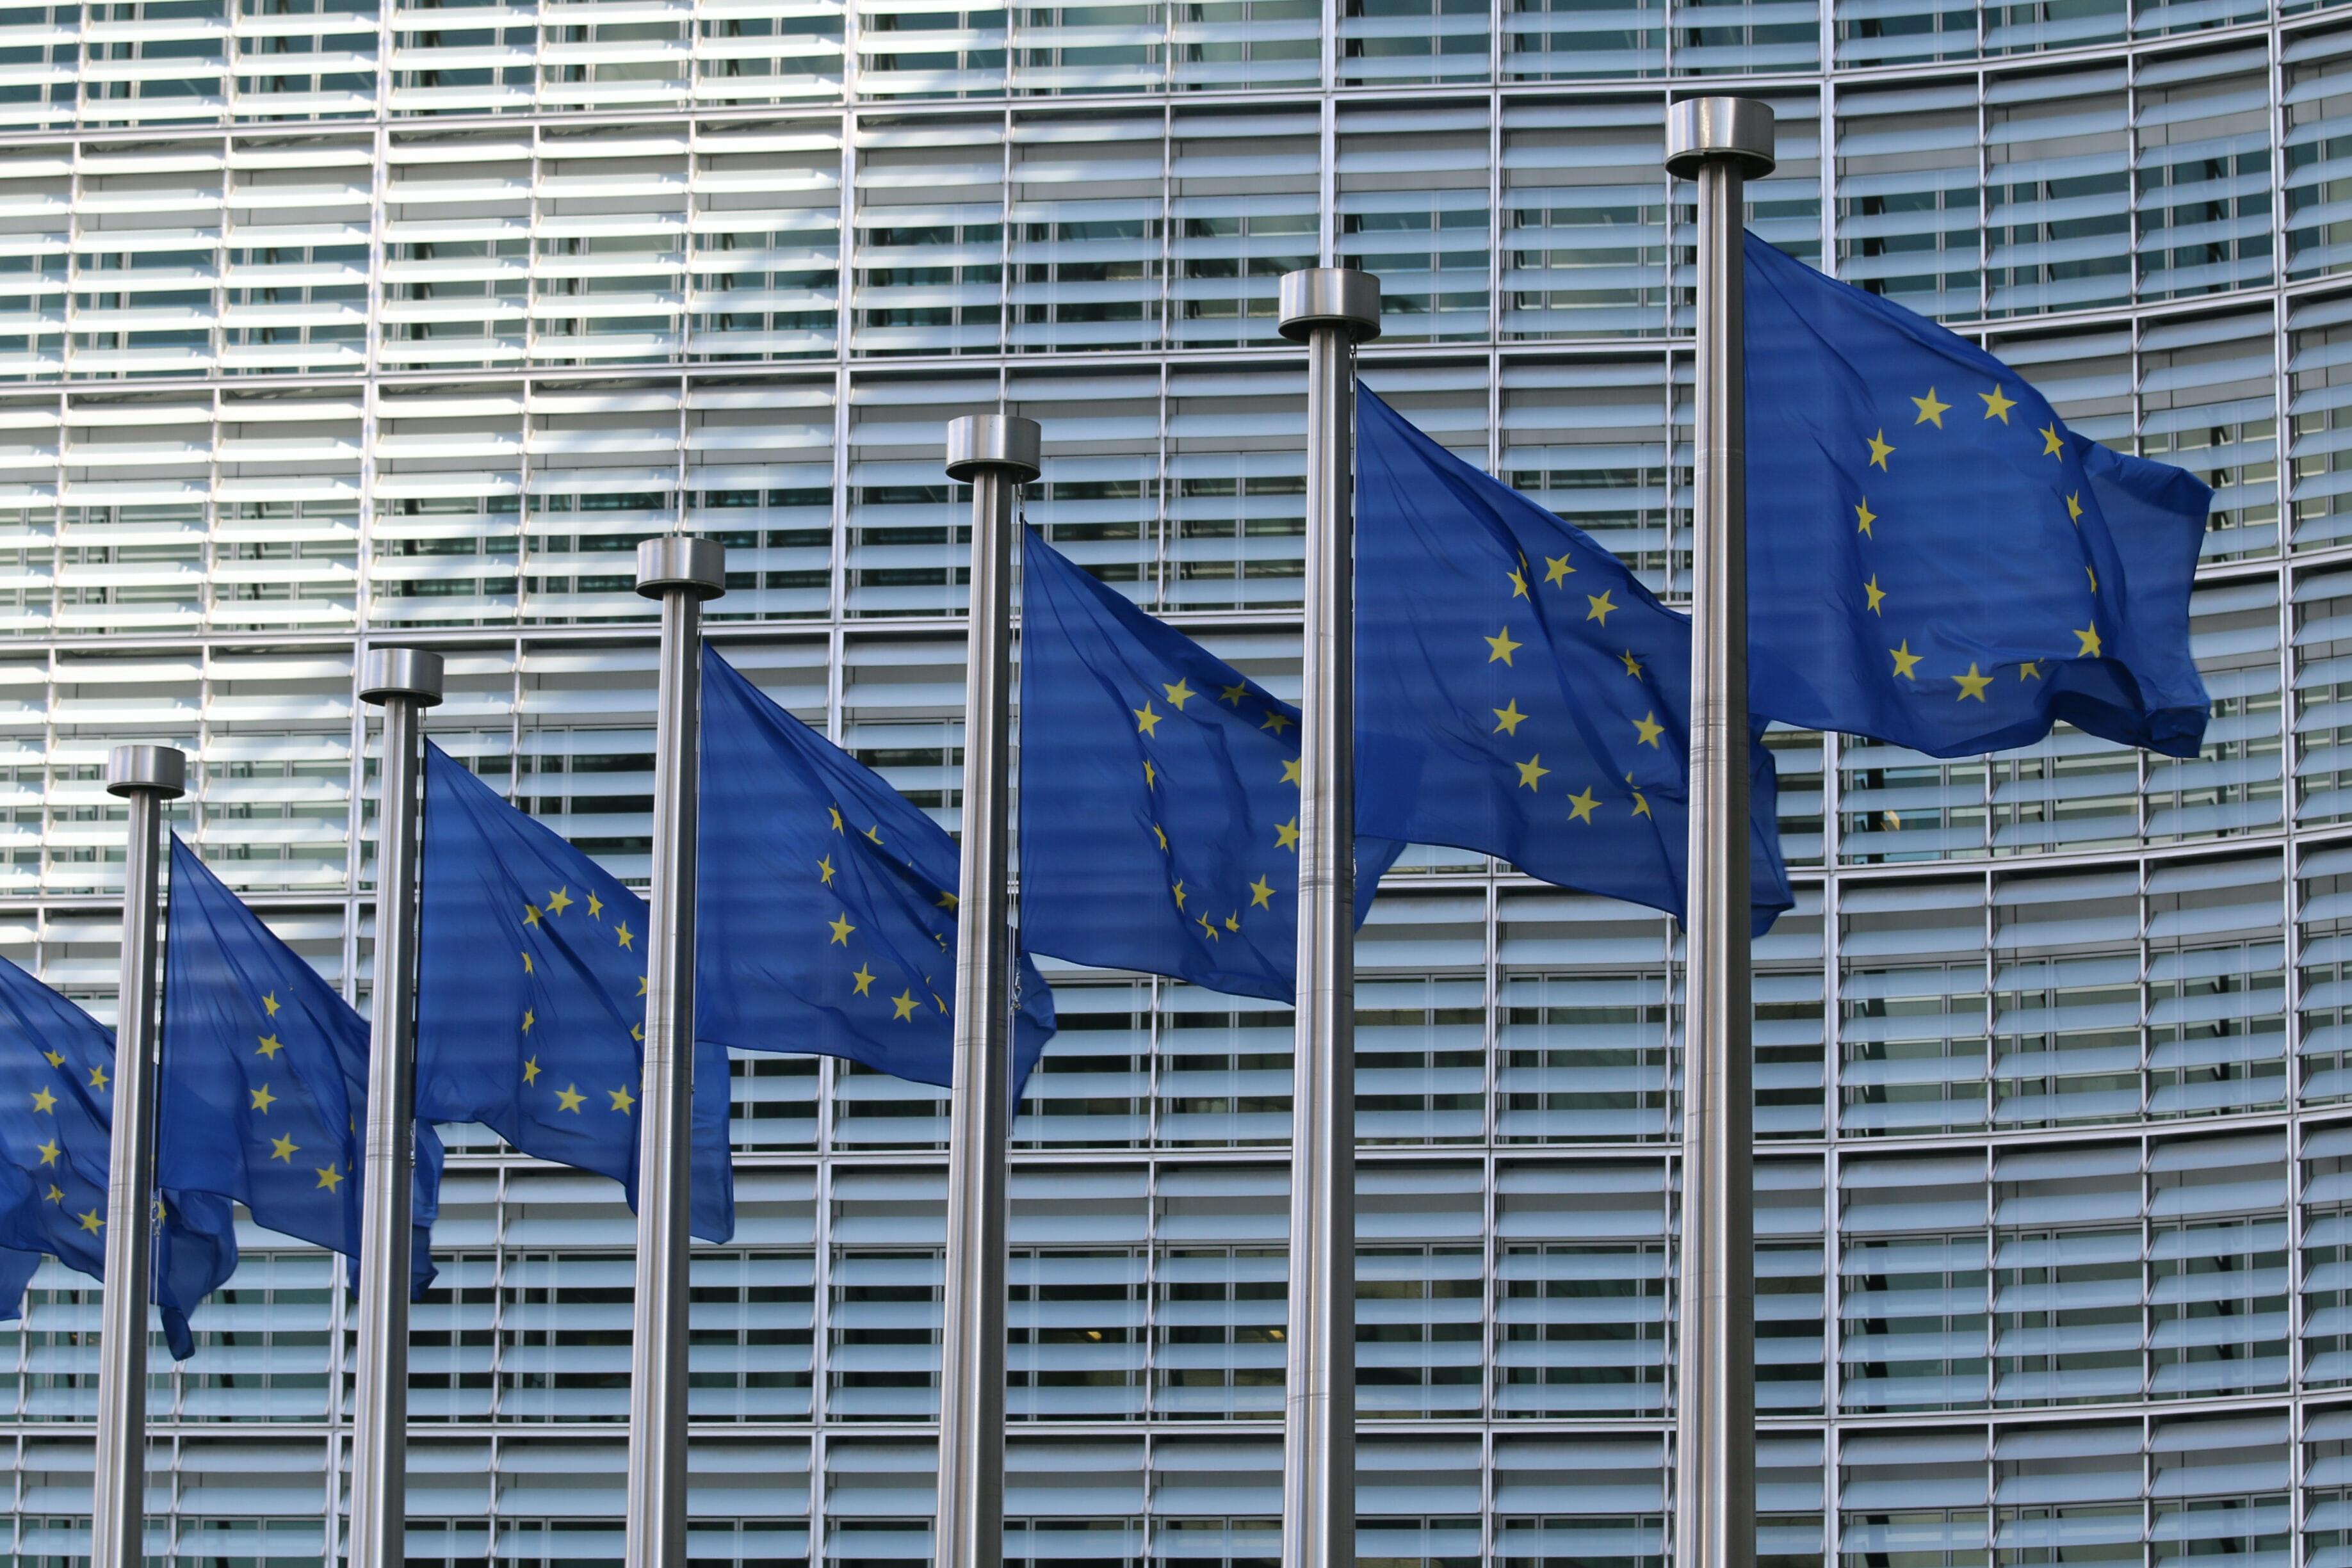 Imatge conjunt de banderes de la Unió Europea